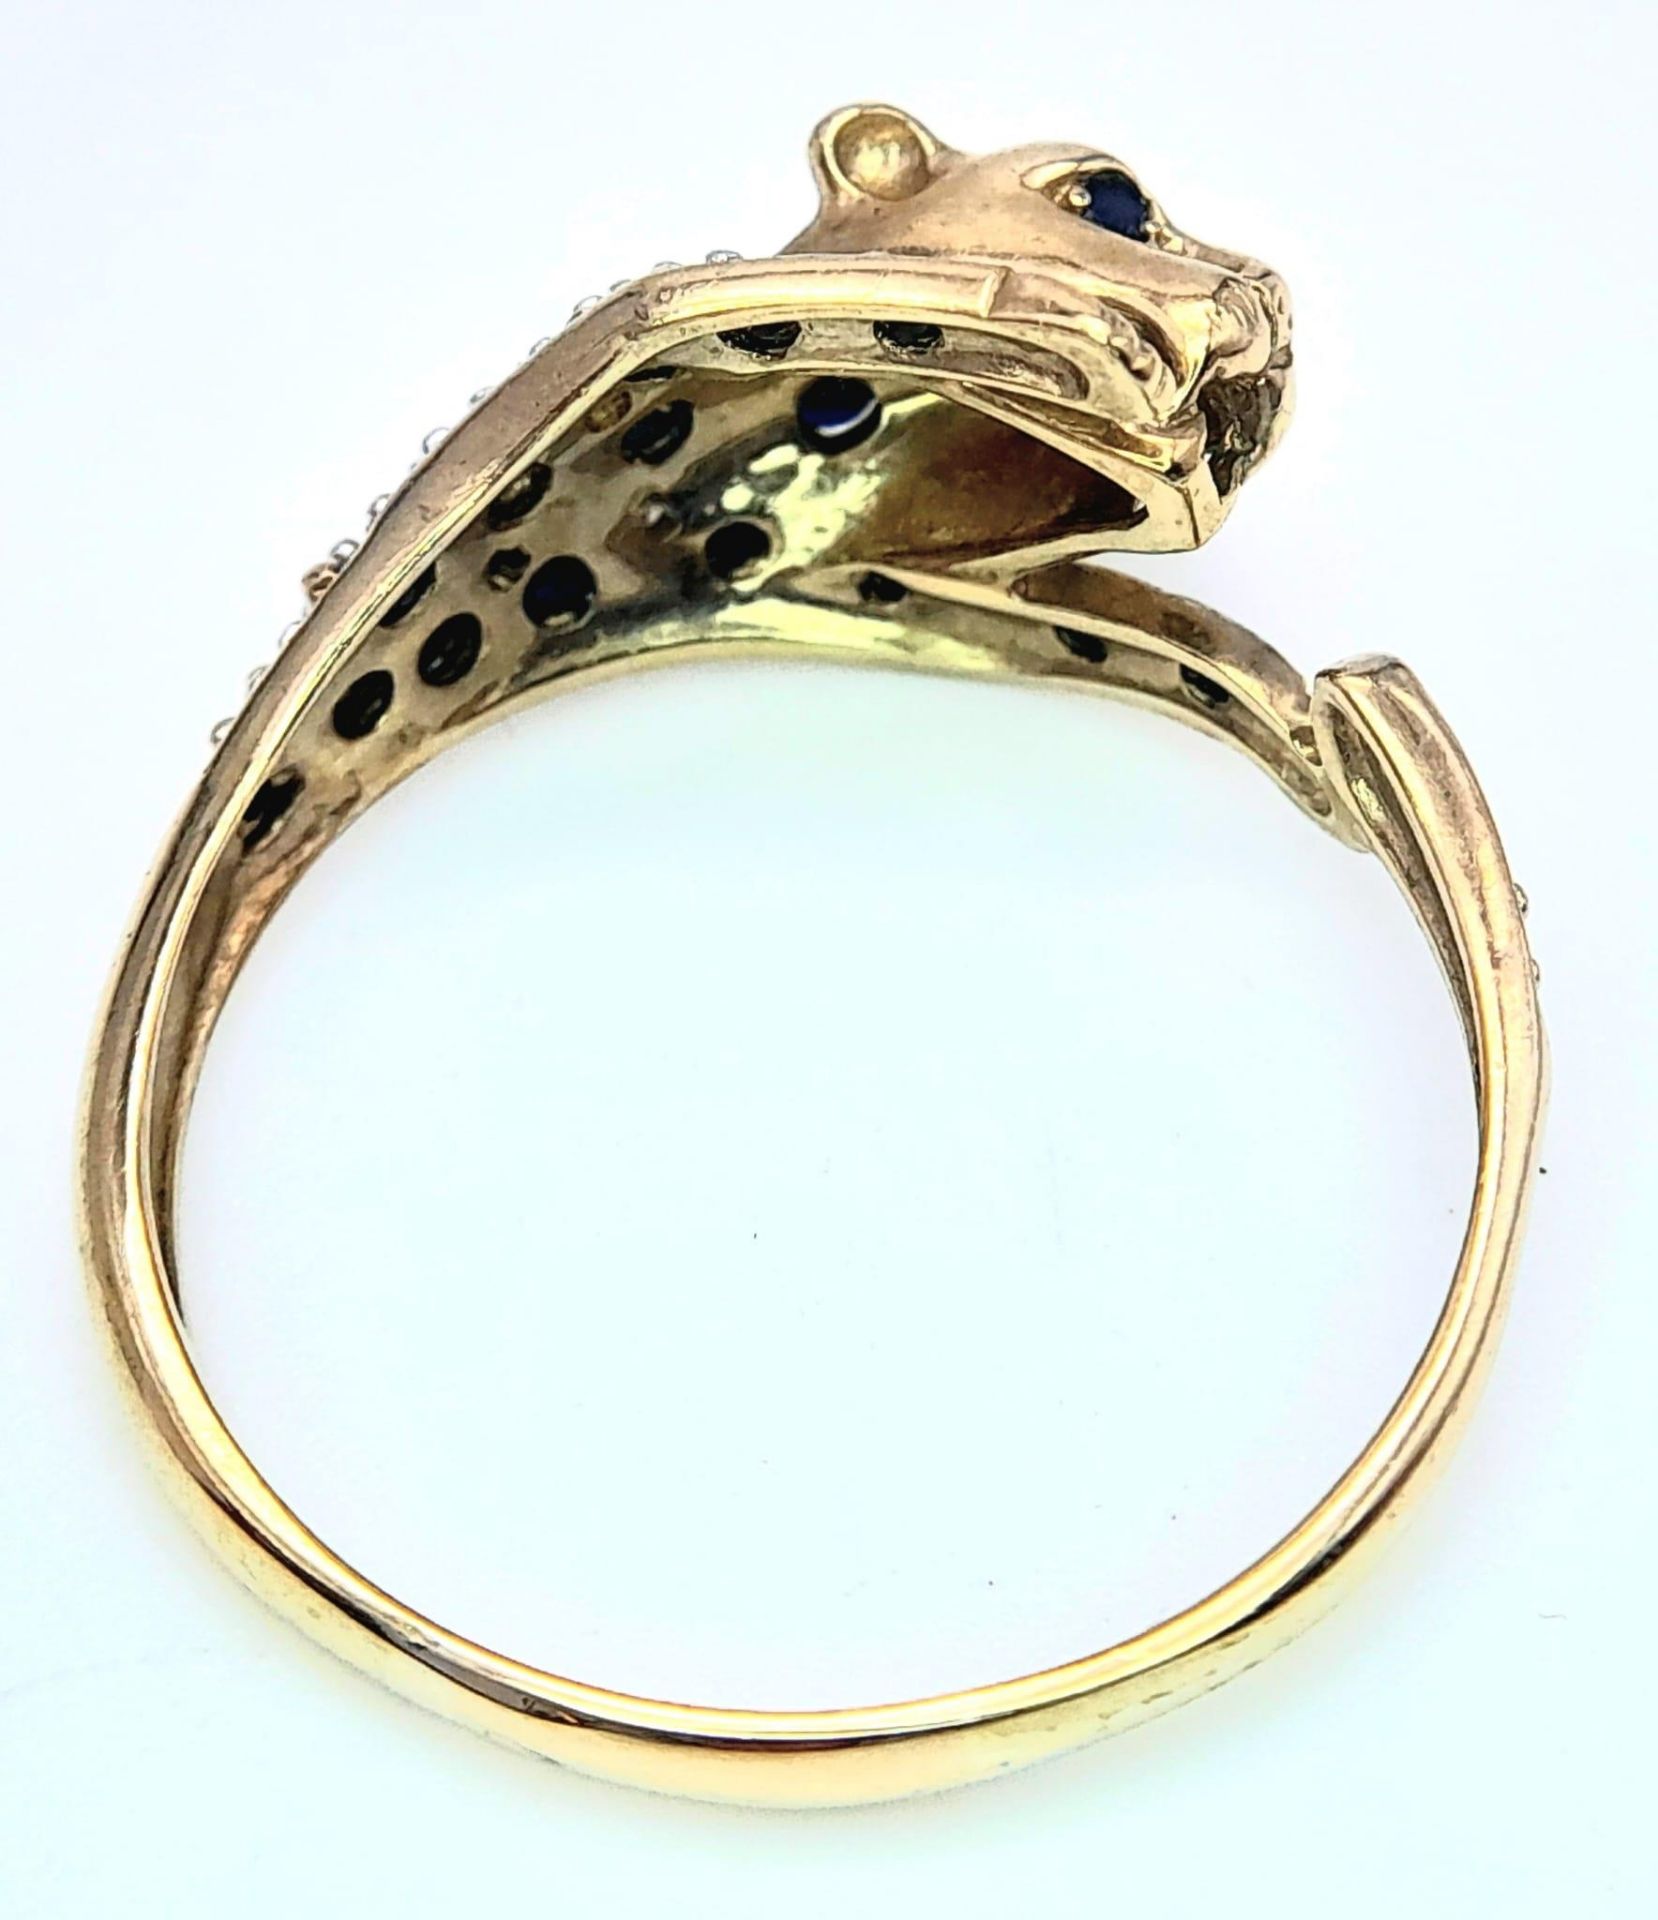 A 9K YELLOW GOLD DIAMOND & SAPPHIRE SET PANTHER RING. 3.2G. SIZE U - Image 6 of 6